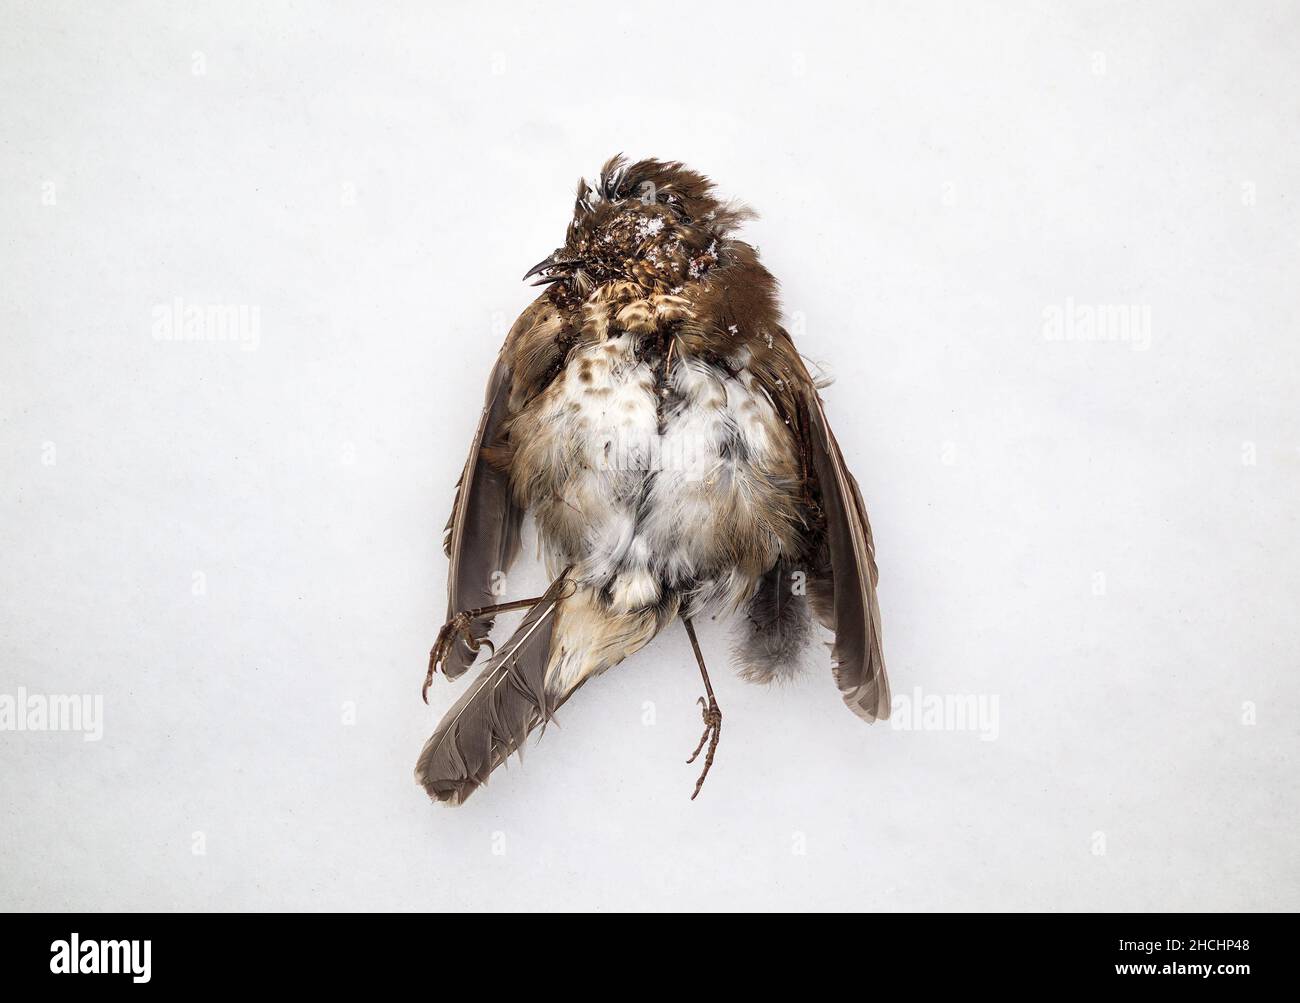 Kleiner toter Vogel, der im Schnee auf dem Boden gefroren war, Draufsicht. Sperling oder singbird starb aufgrund der milden Null-Temperatur im Wintersturm Schneesturm oder FL Stockfoto